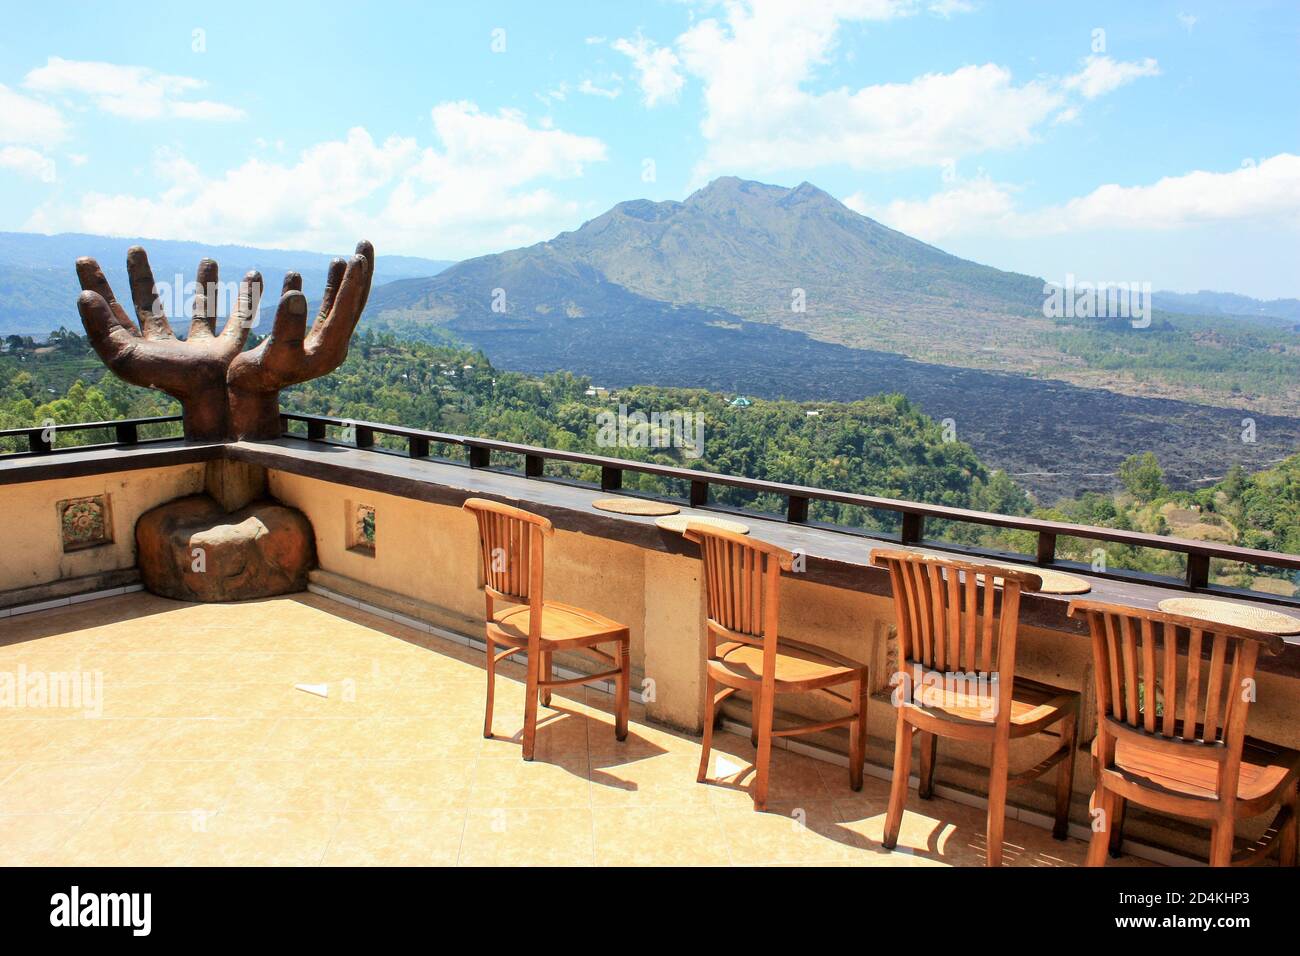 Kintamani, Bali / Indonesia - 3 settembre 2019: Vista del Monte Batur da una terrazza con una grande scultura a mani aperte e una fila di sedie in legno Foto Stock